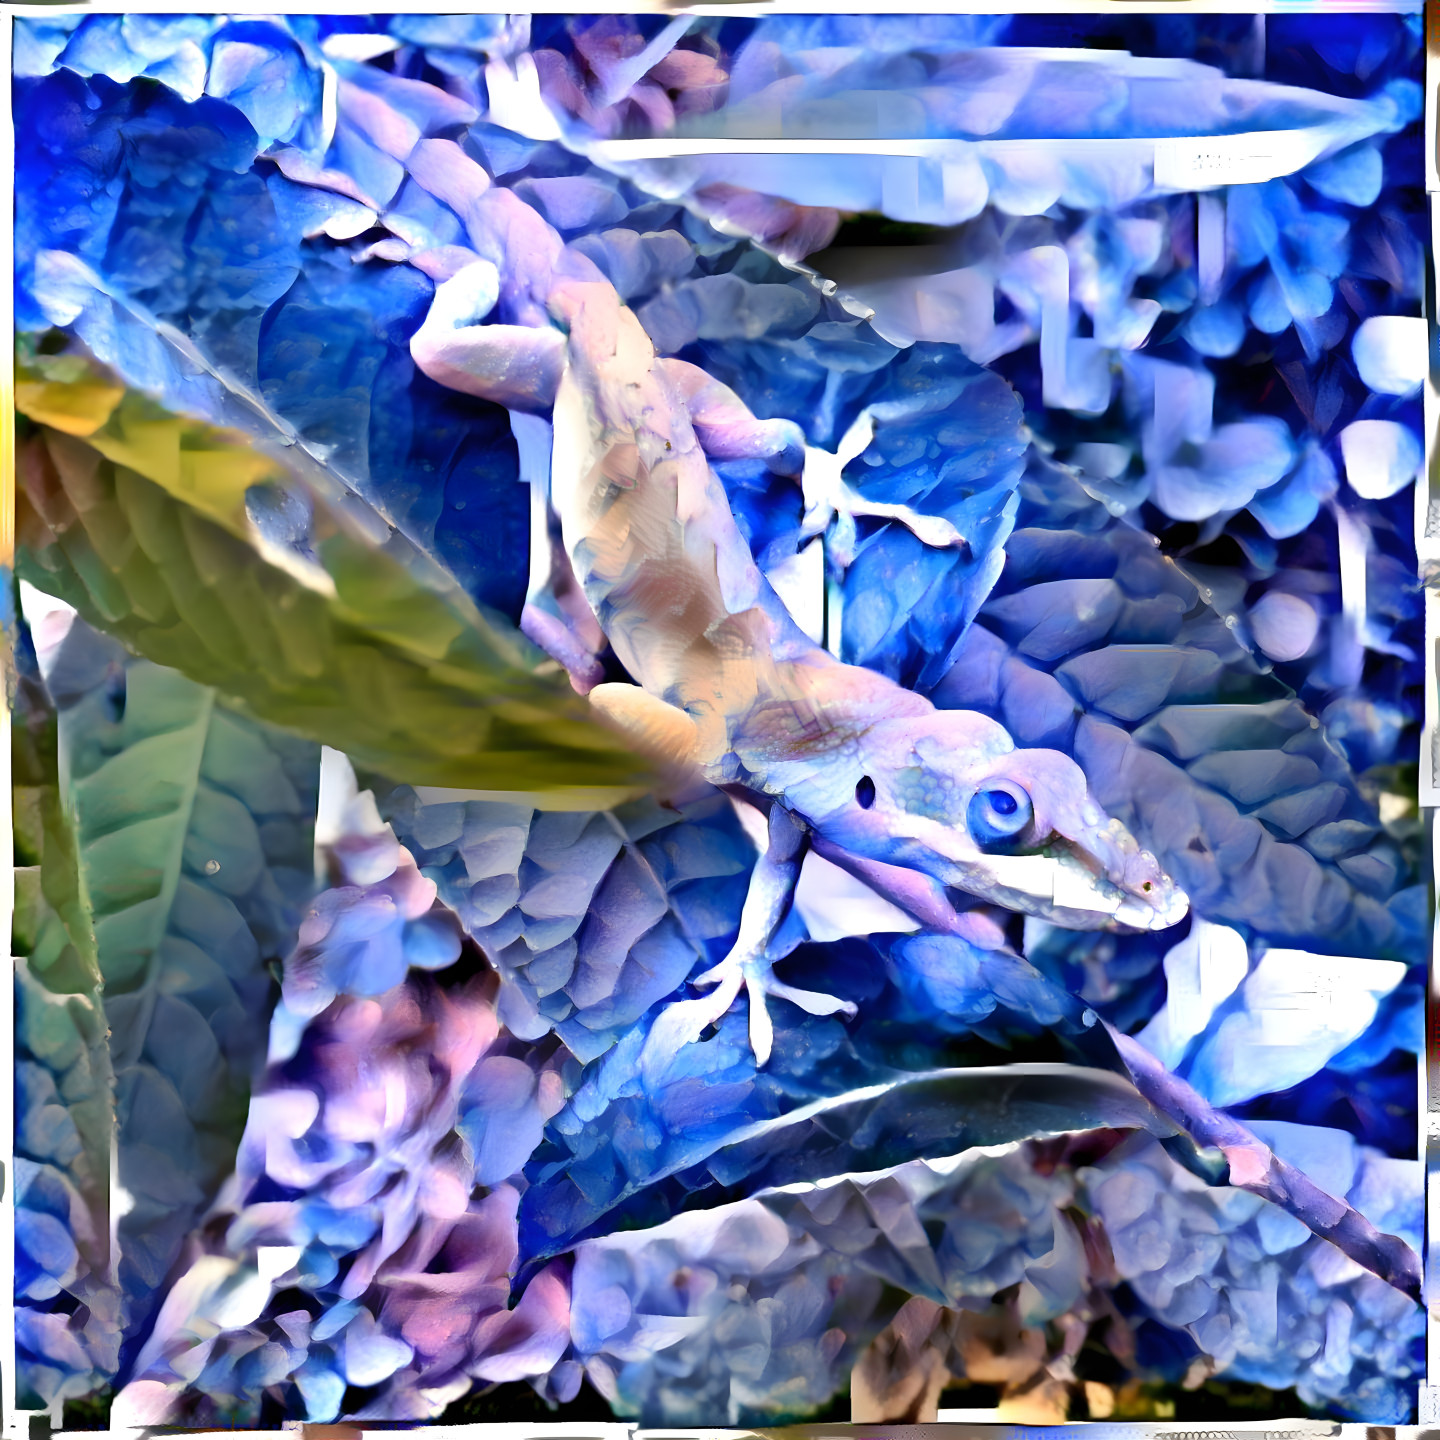 Floral chameleon